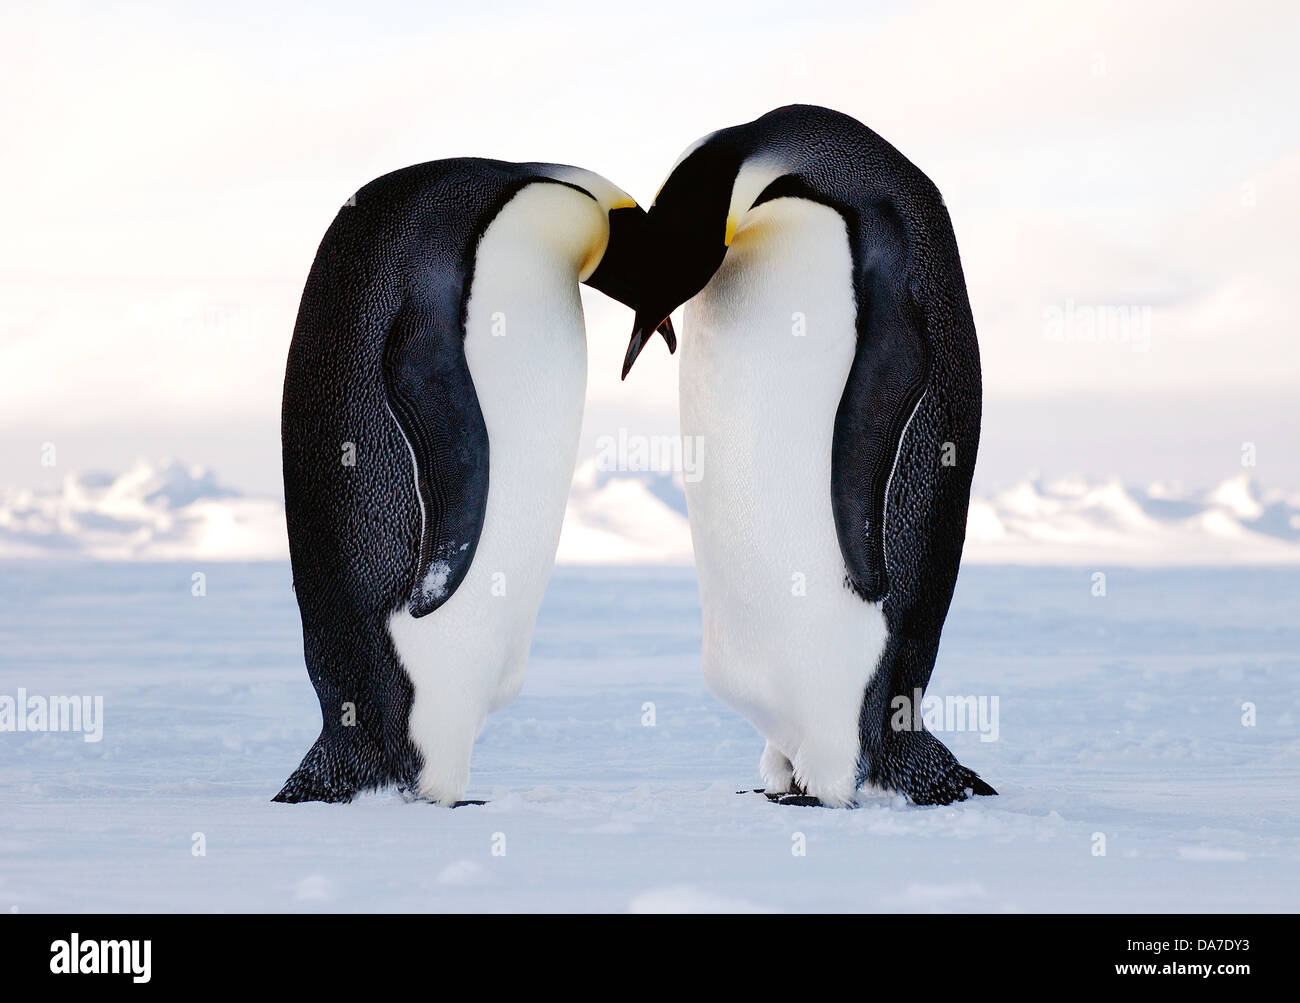 Treffen sich zwei Kaiserpinguine auf der Antarktis Eis im Balzverhalten 30. Januar 2008 in der Antarktis. Kaiserpinguine Eiablage im Mai und Juni, woraufhin das Männchen übernimmt die Verantwortung für die gesamte 62-66 Tagen Inkubationszeit während das Weibchen auf Nahrungssuche See, gelegt. Stockfoto